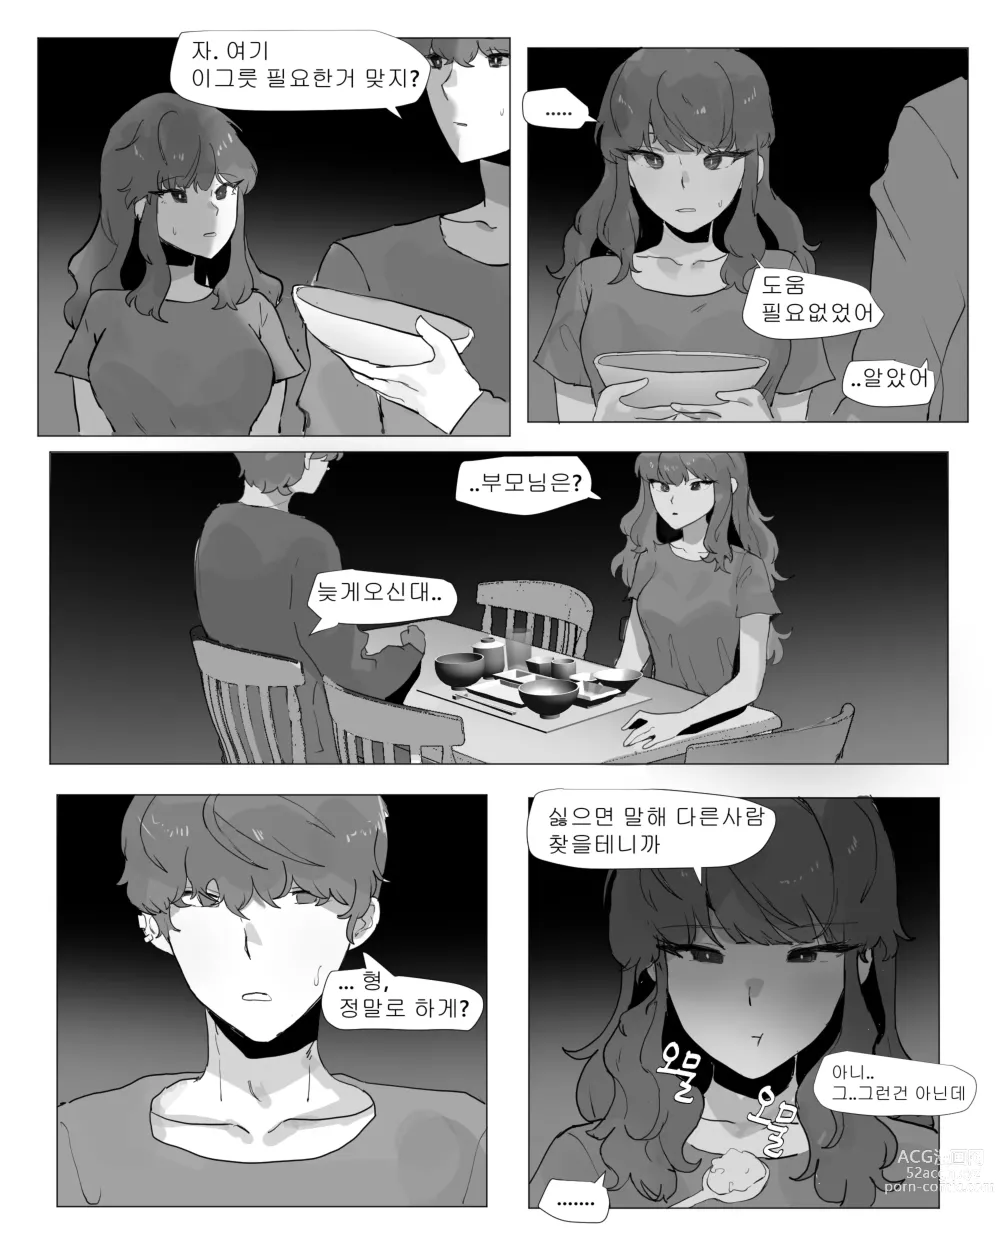 Page 4 of doujinshi 어느날 나는 TS 되었다 -1